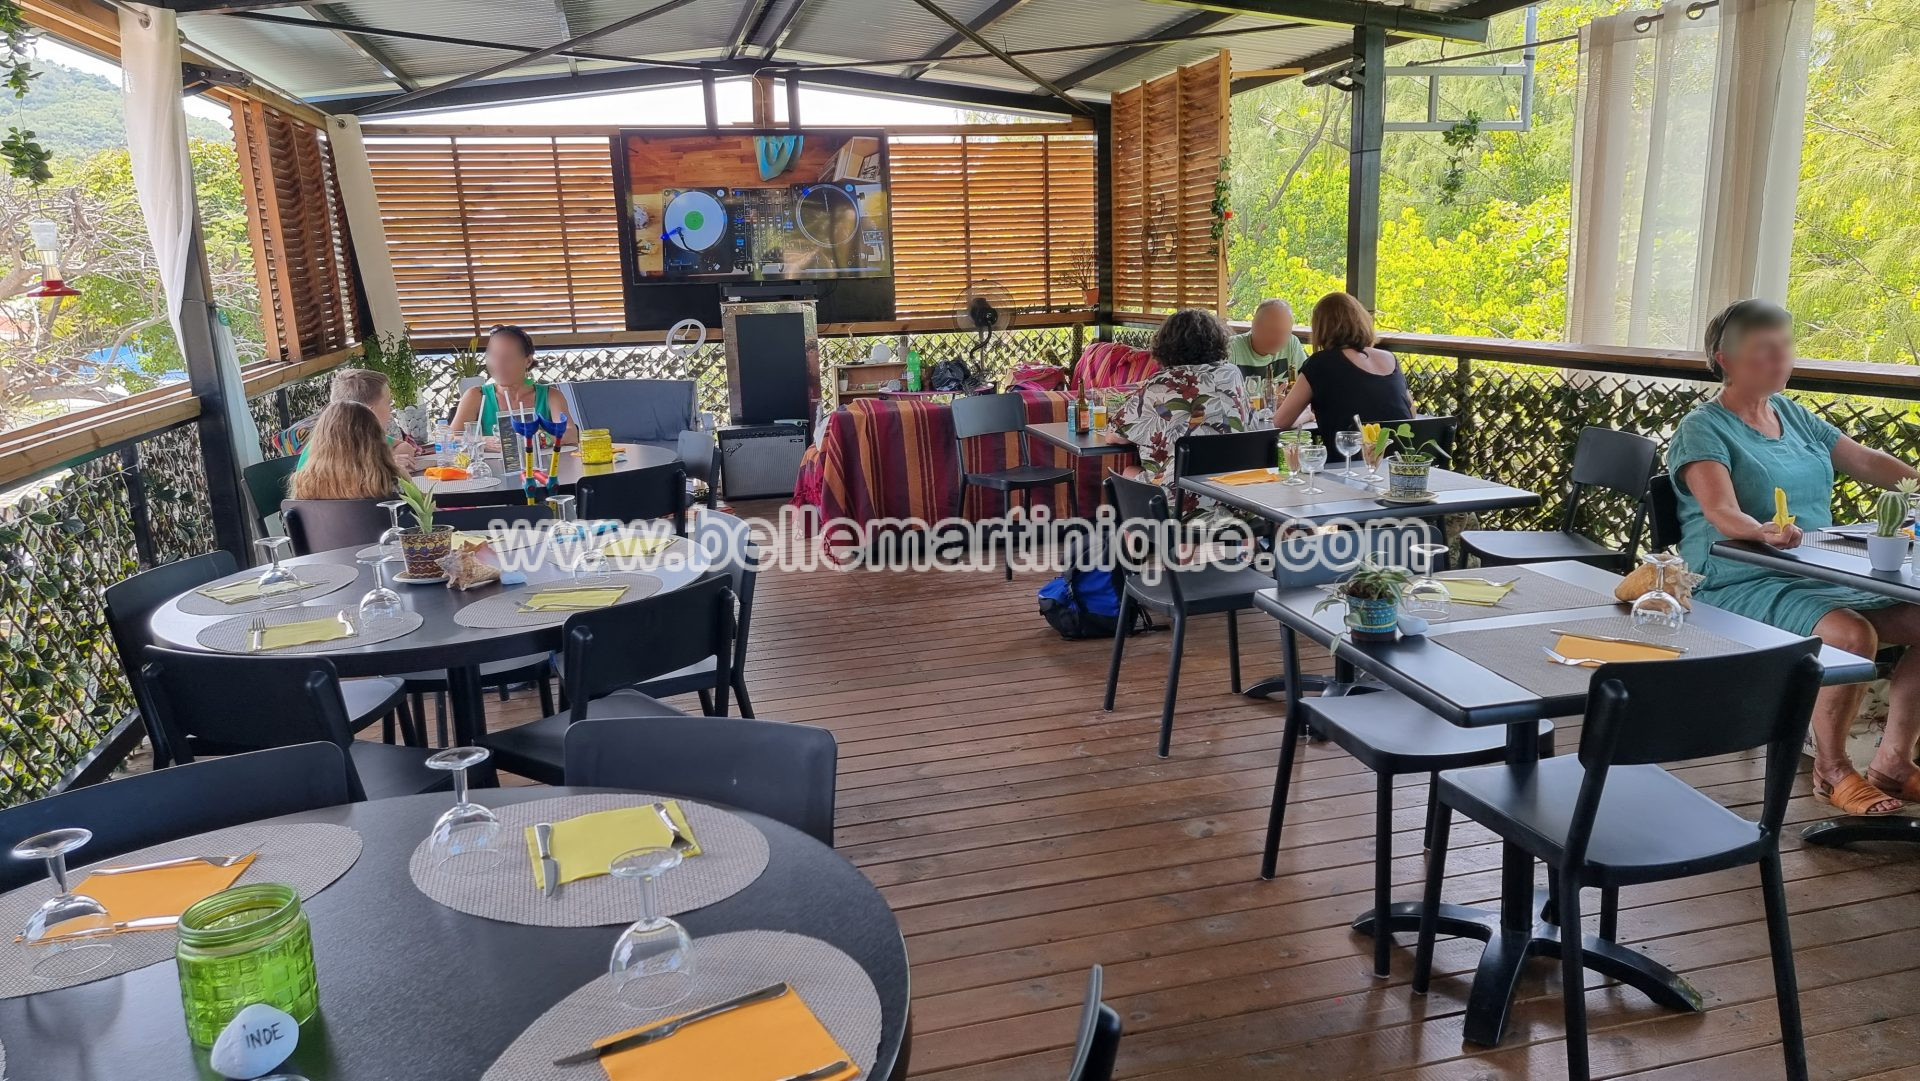 La terrasse du Filao - restaurant - bien etre - detente - rooftop - trinite - martinique - antilles - caraibes 3